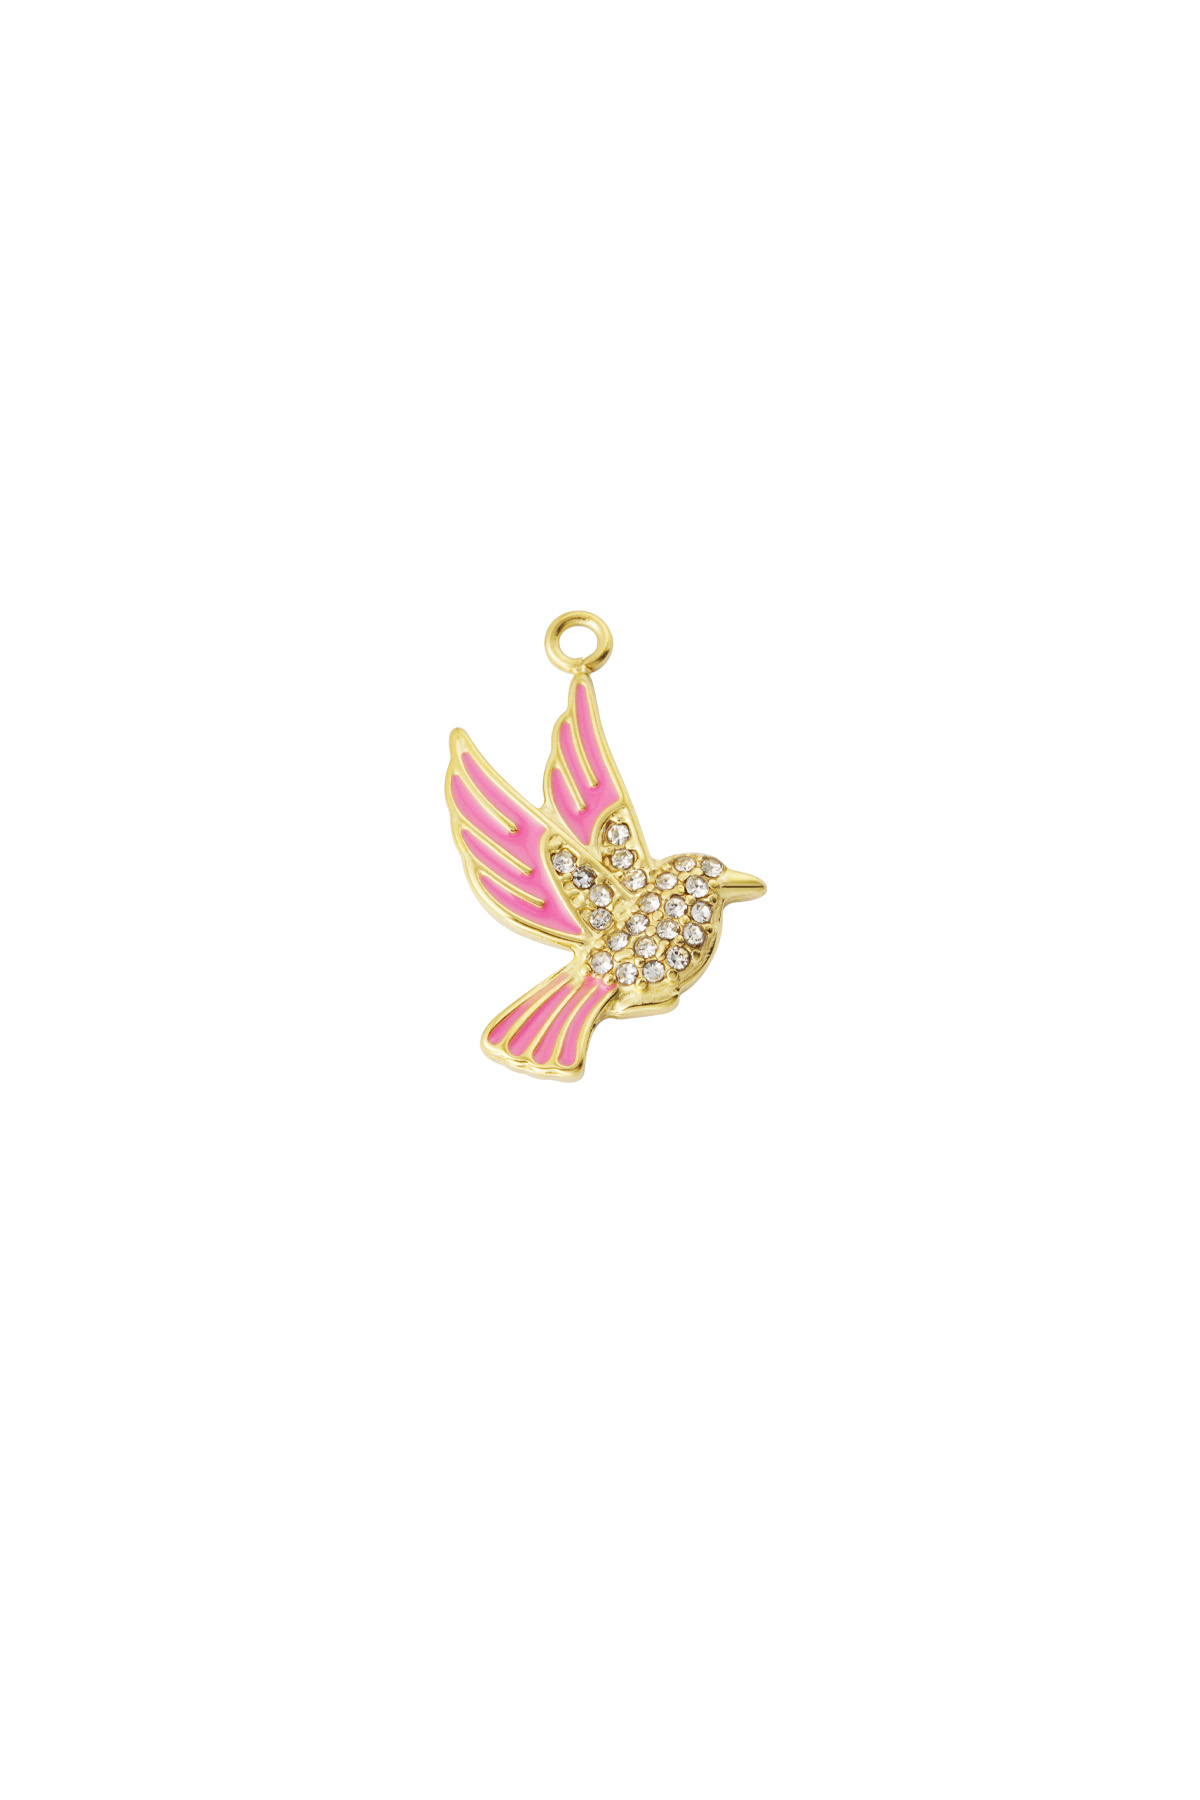 Vogel bedel - roze goud